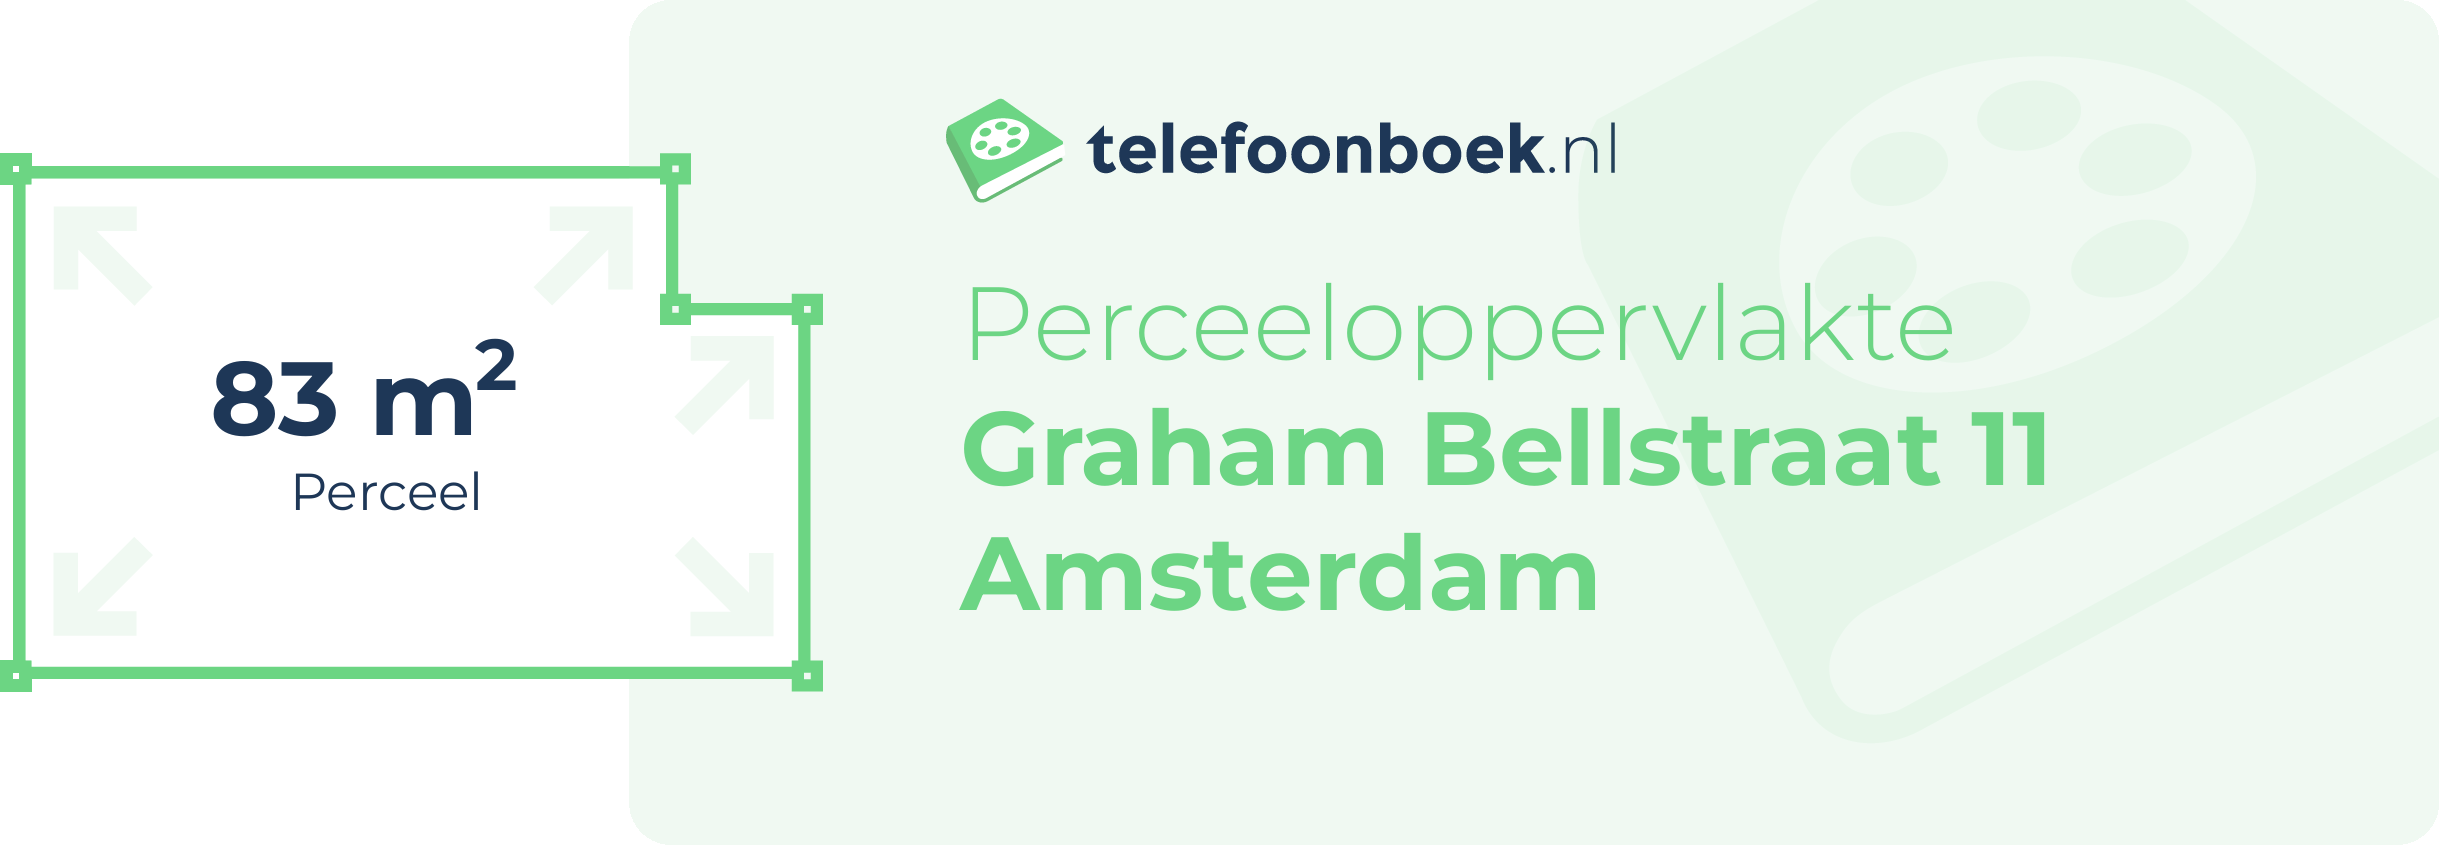 Perceeloppervlakte Graham Bellstraat 11 Amsterdam